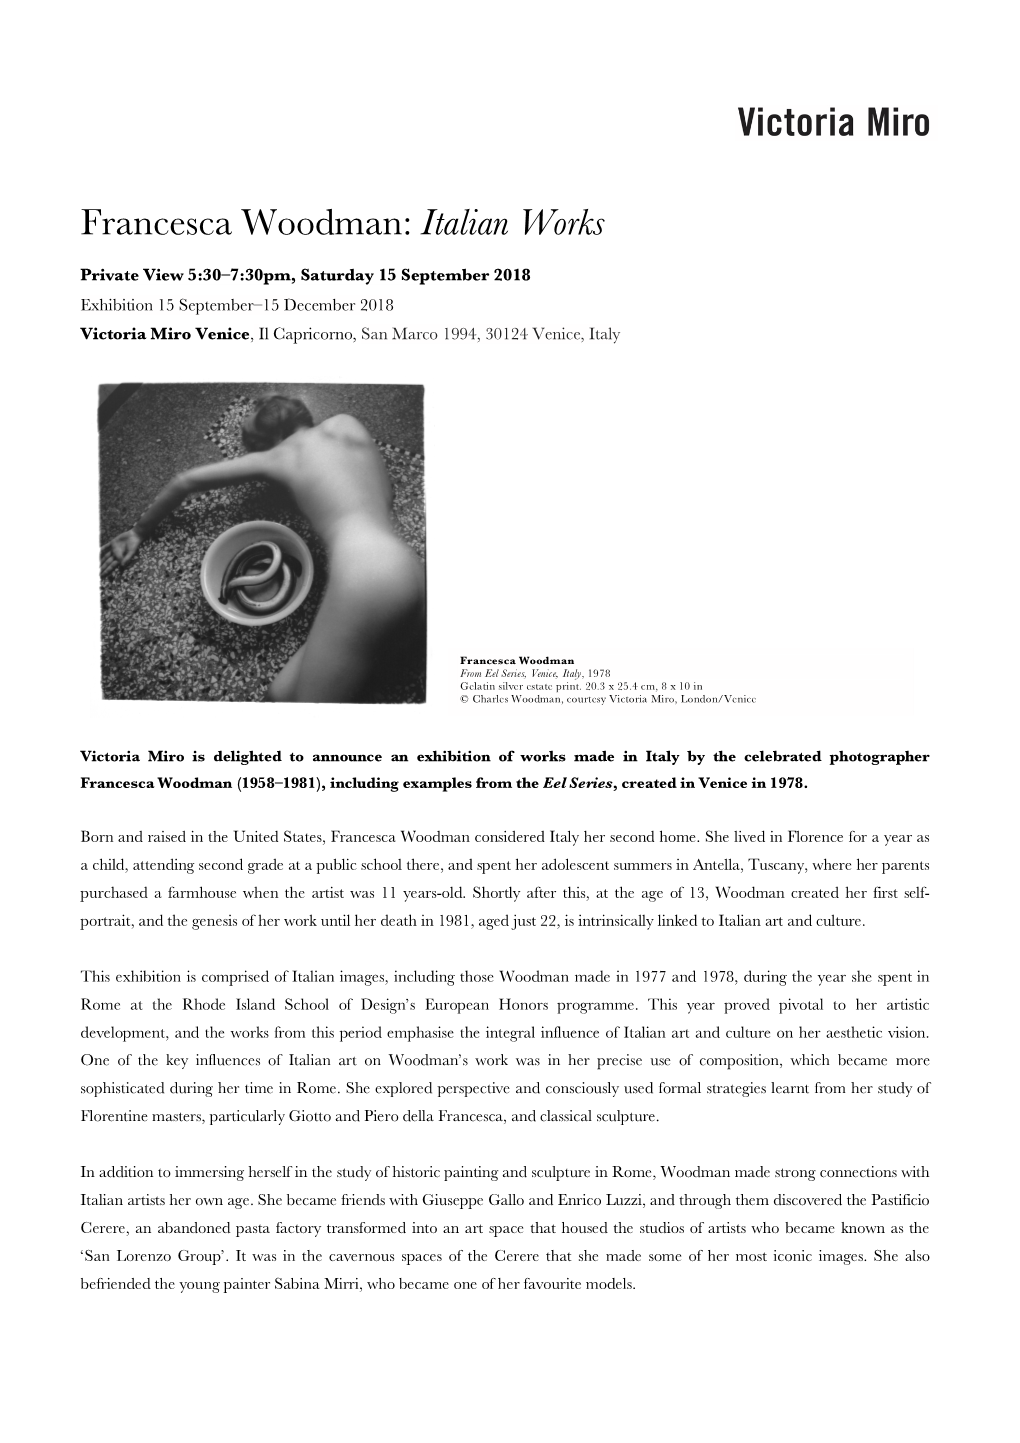 Francesca Woodman: Italian Works